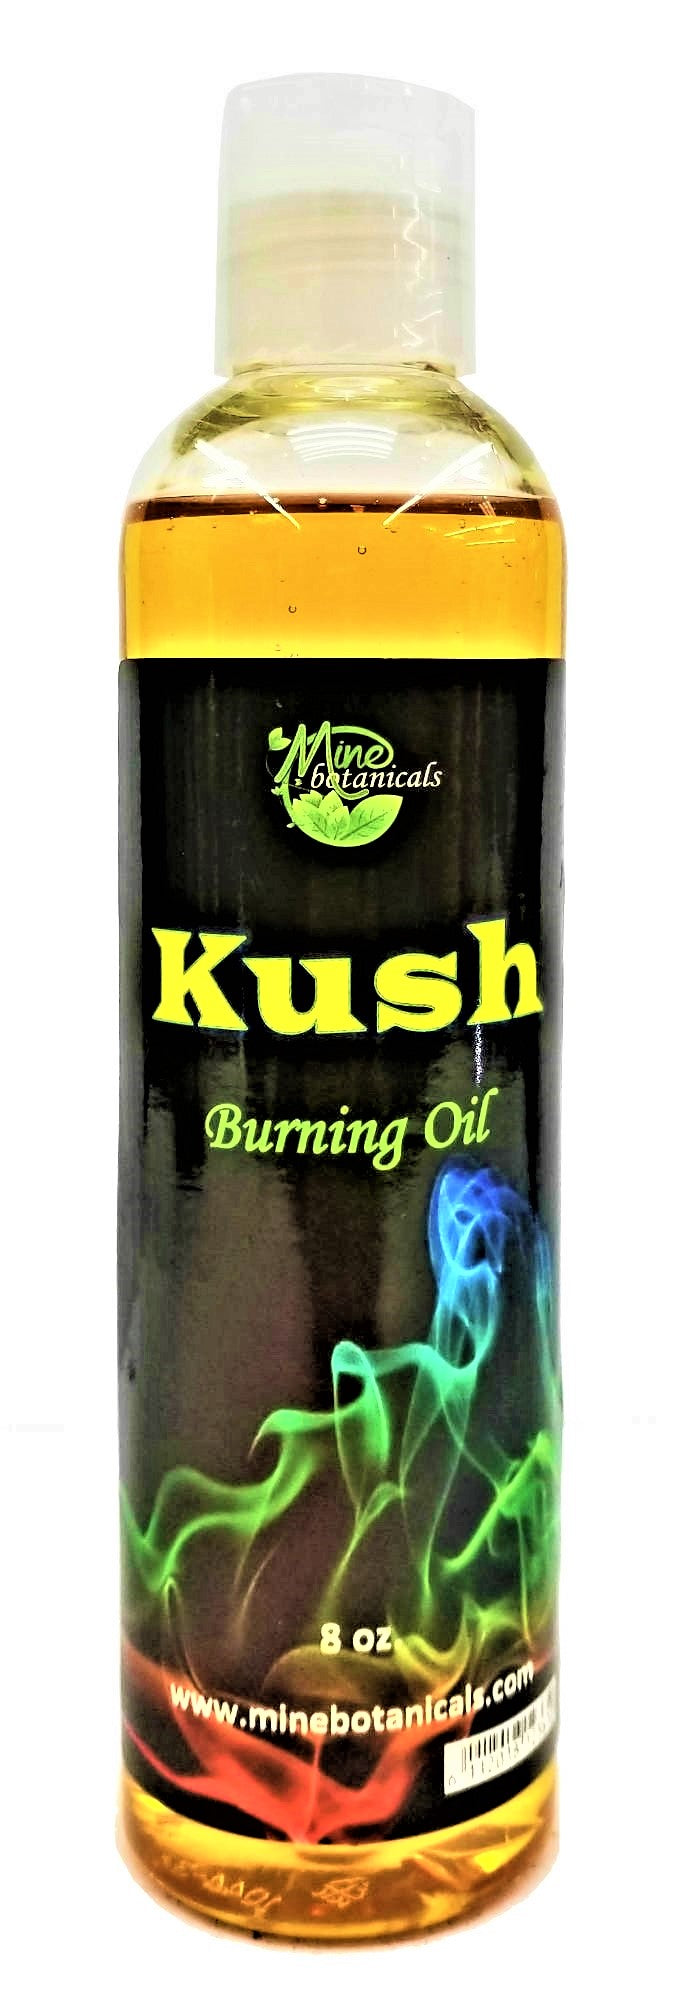 Kush Burning Oil